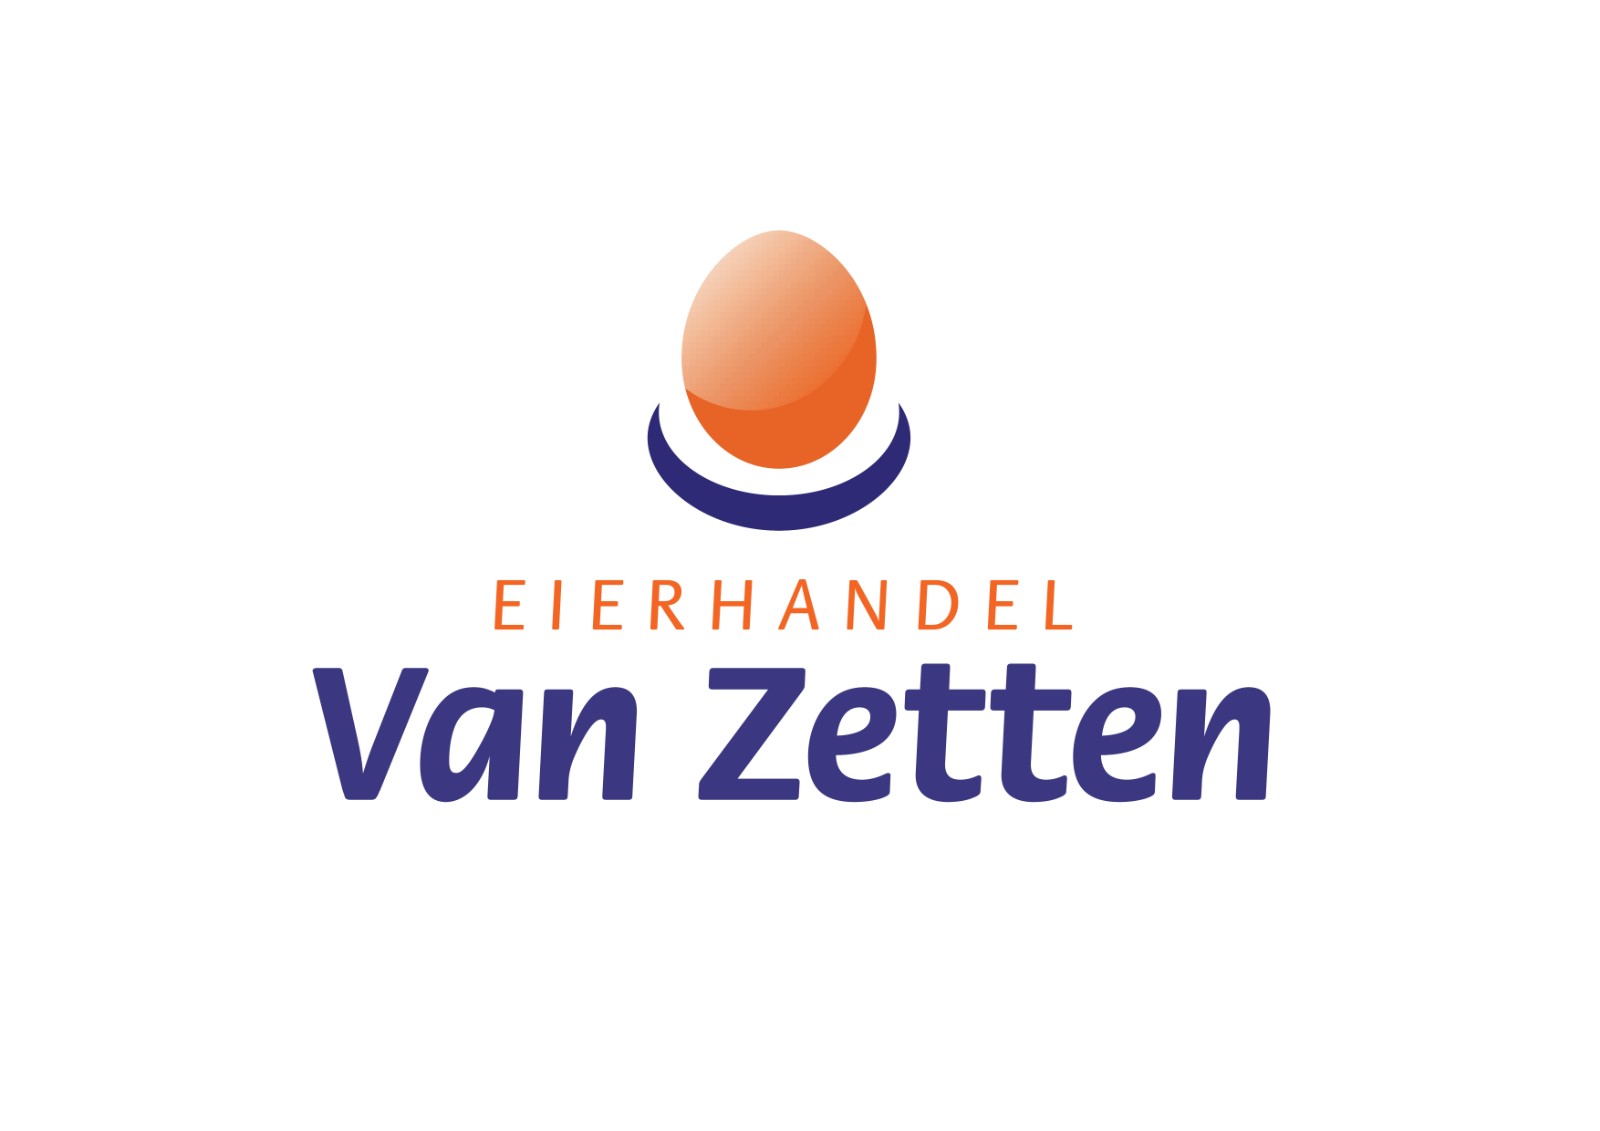 Van Zetten Eierhandel logo